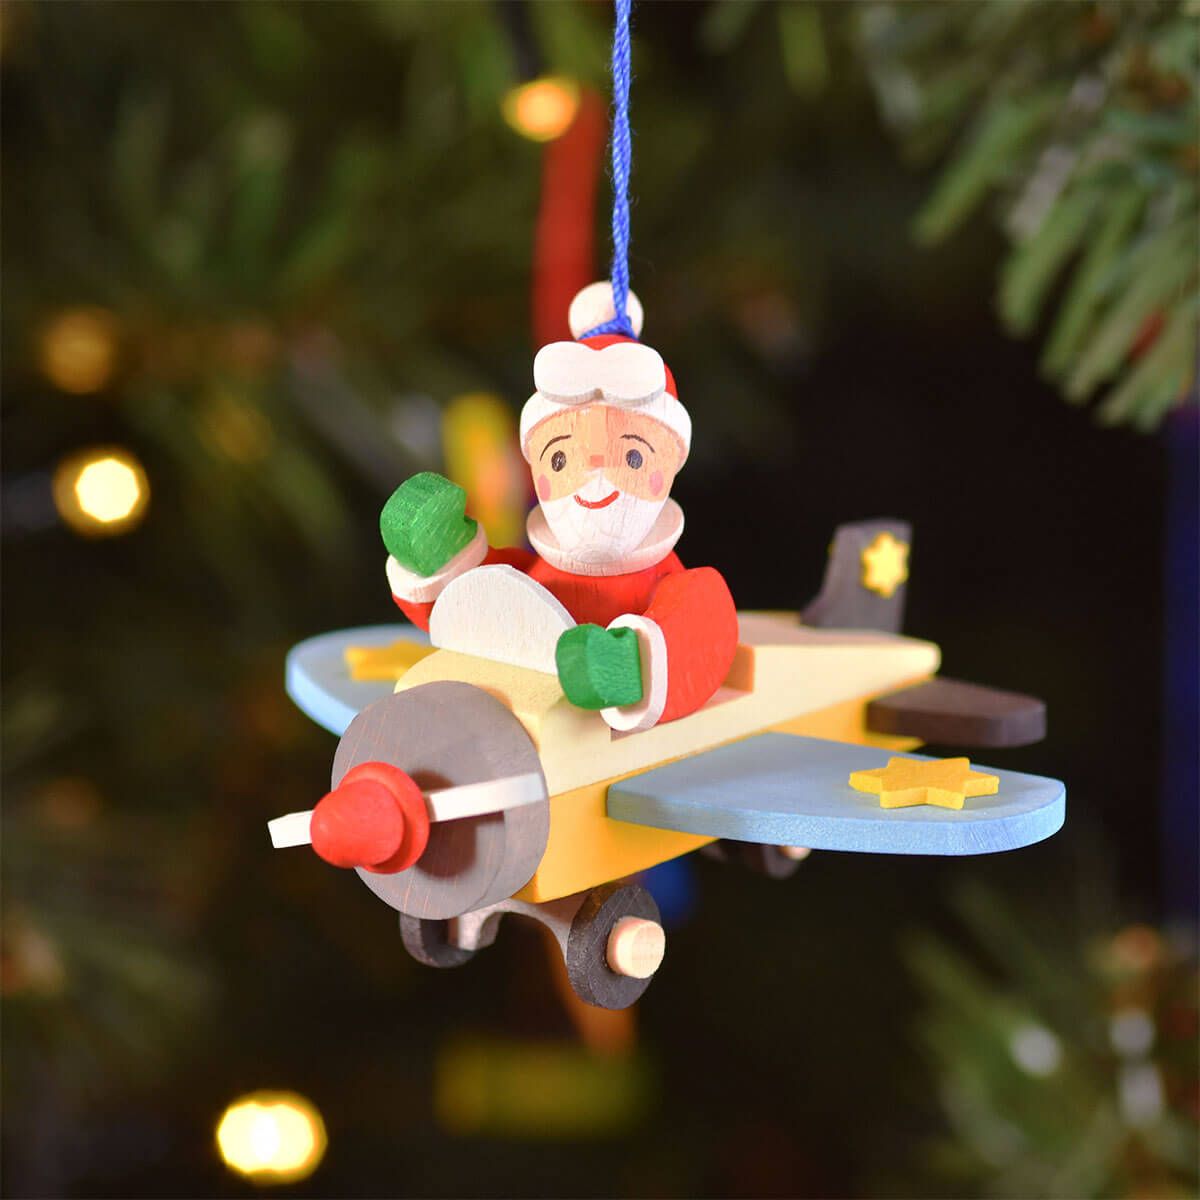 Santa Claus in the Plane Ornament